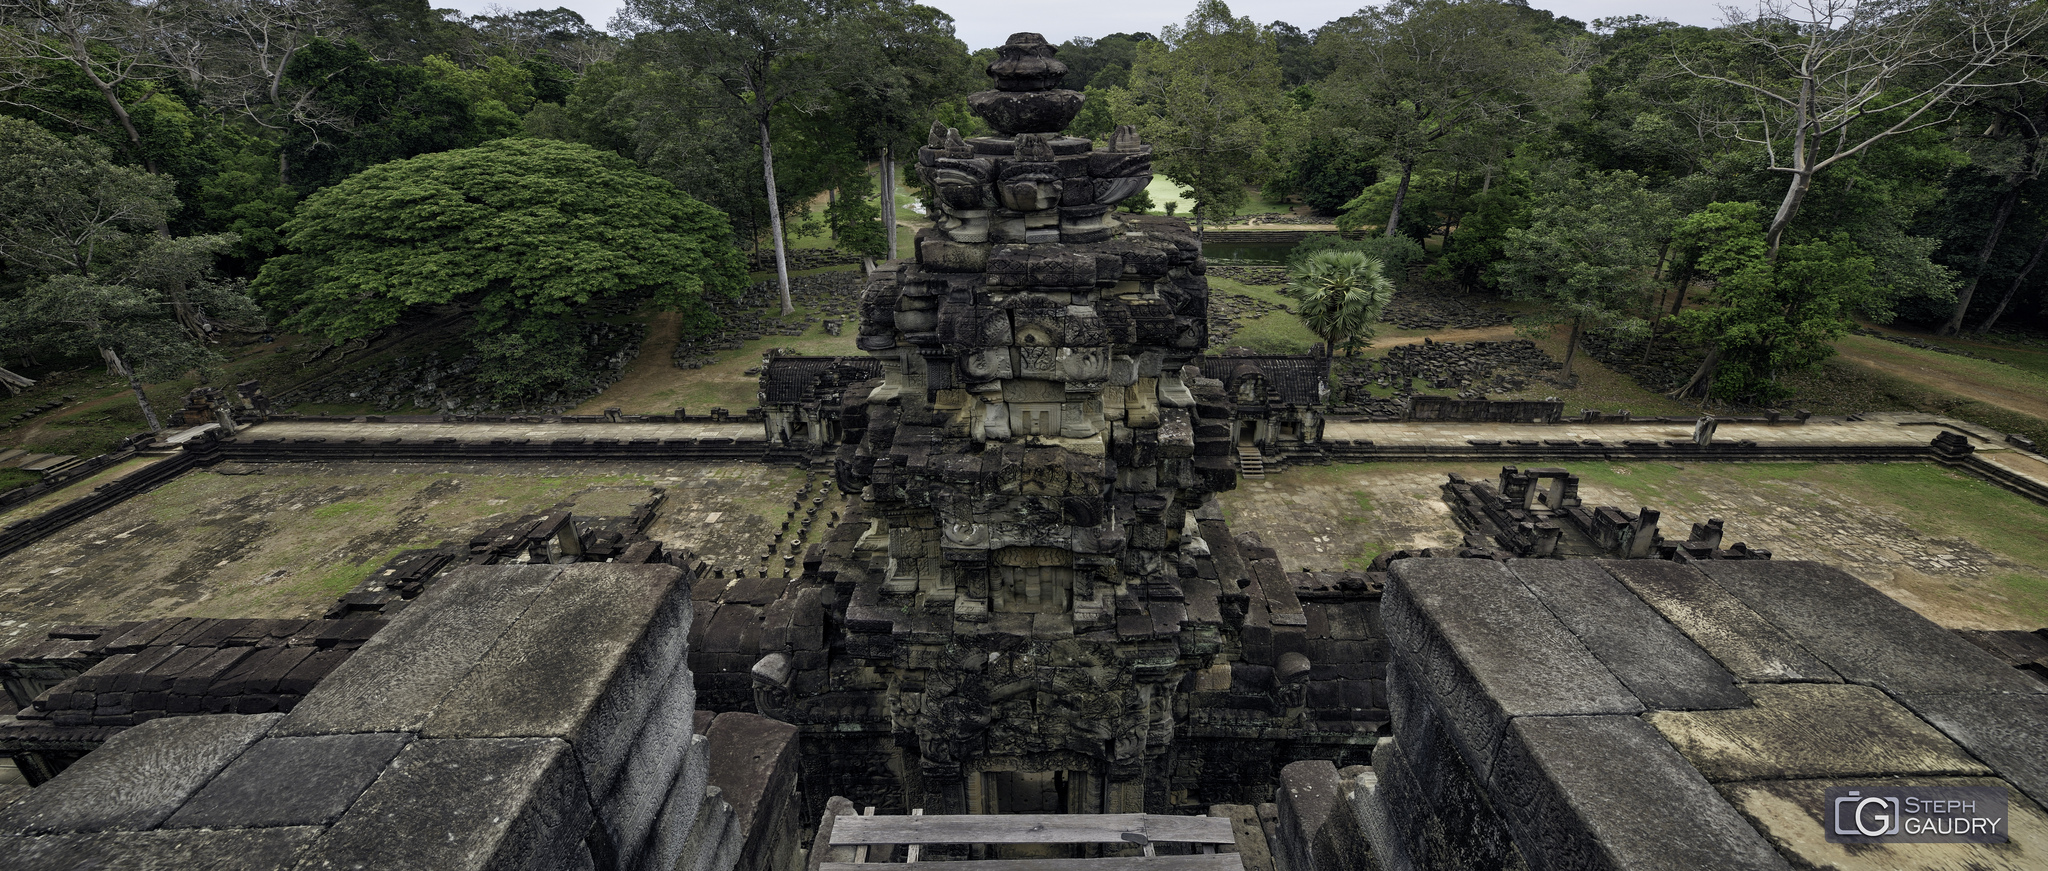 Baphûon (Angkor) [Klik om de diavoorstelling te starten]